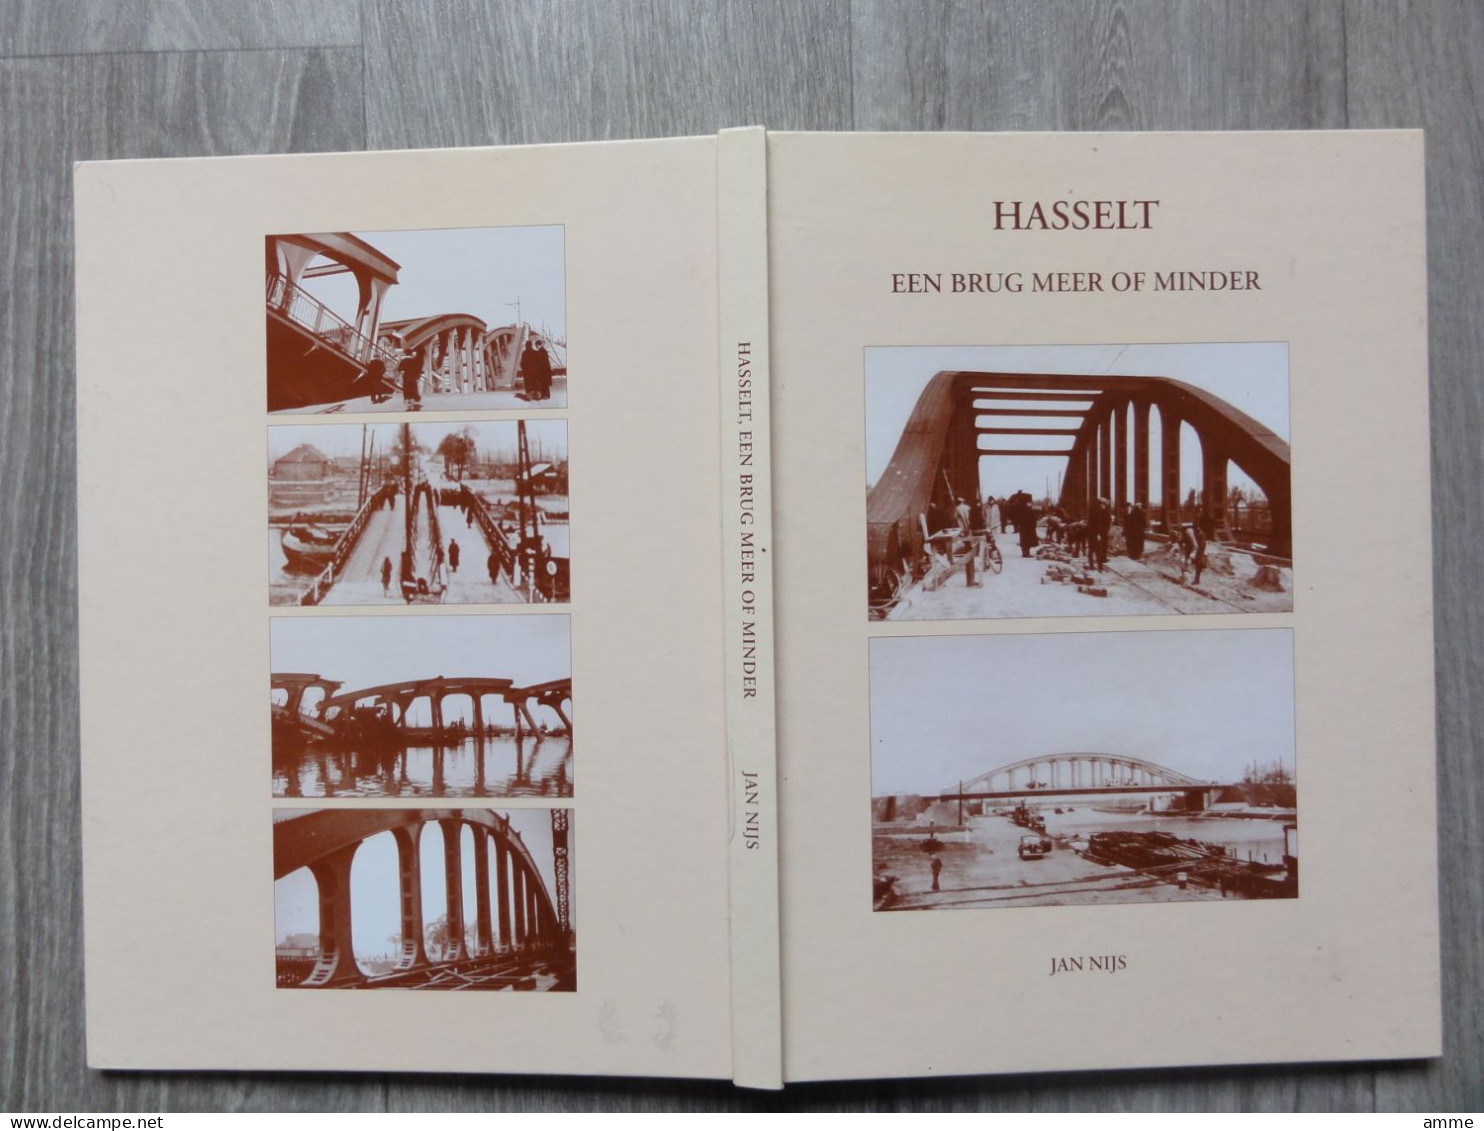 Hasselt  *   (boek)  Hasselt - Een brug meer of minder